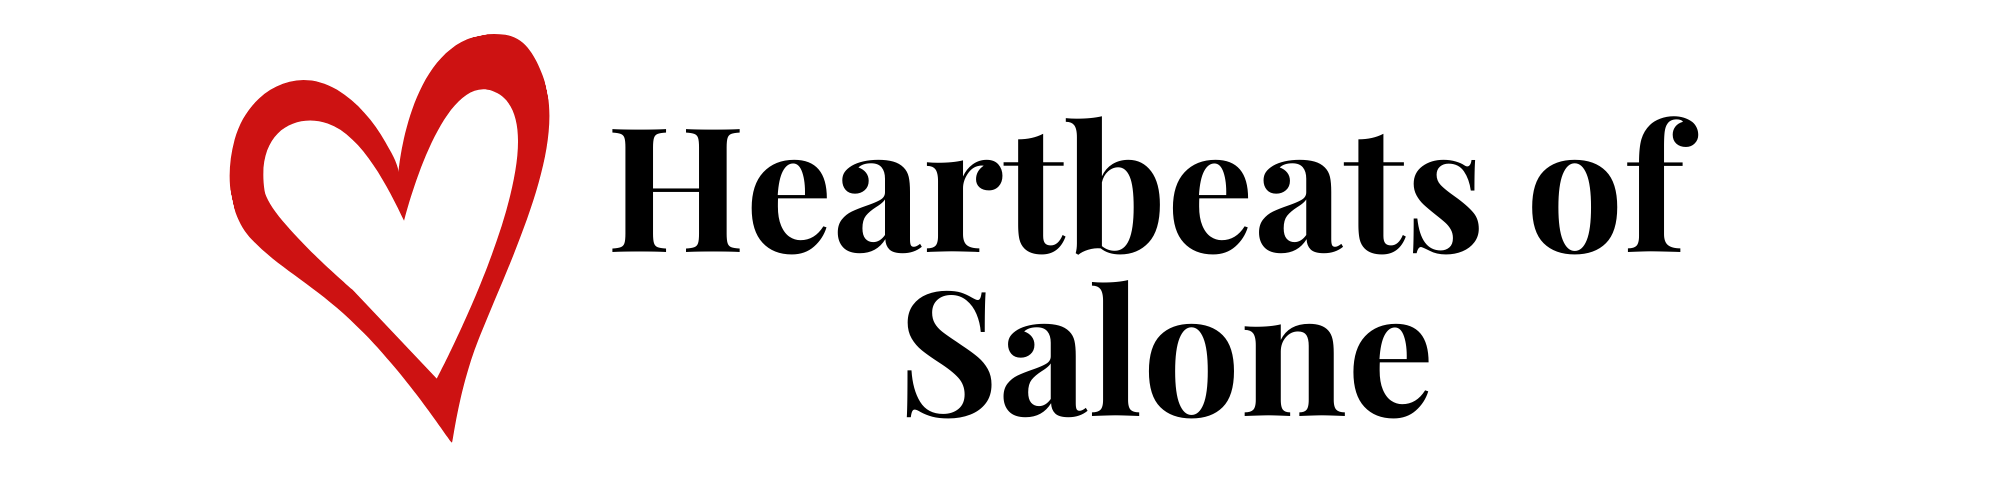 Heartbeats of Salone